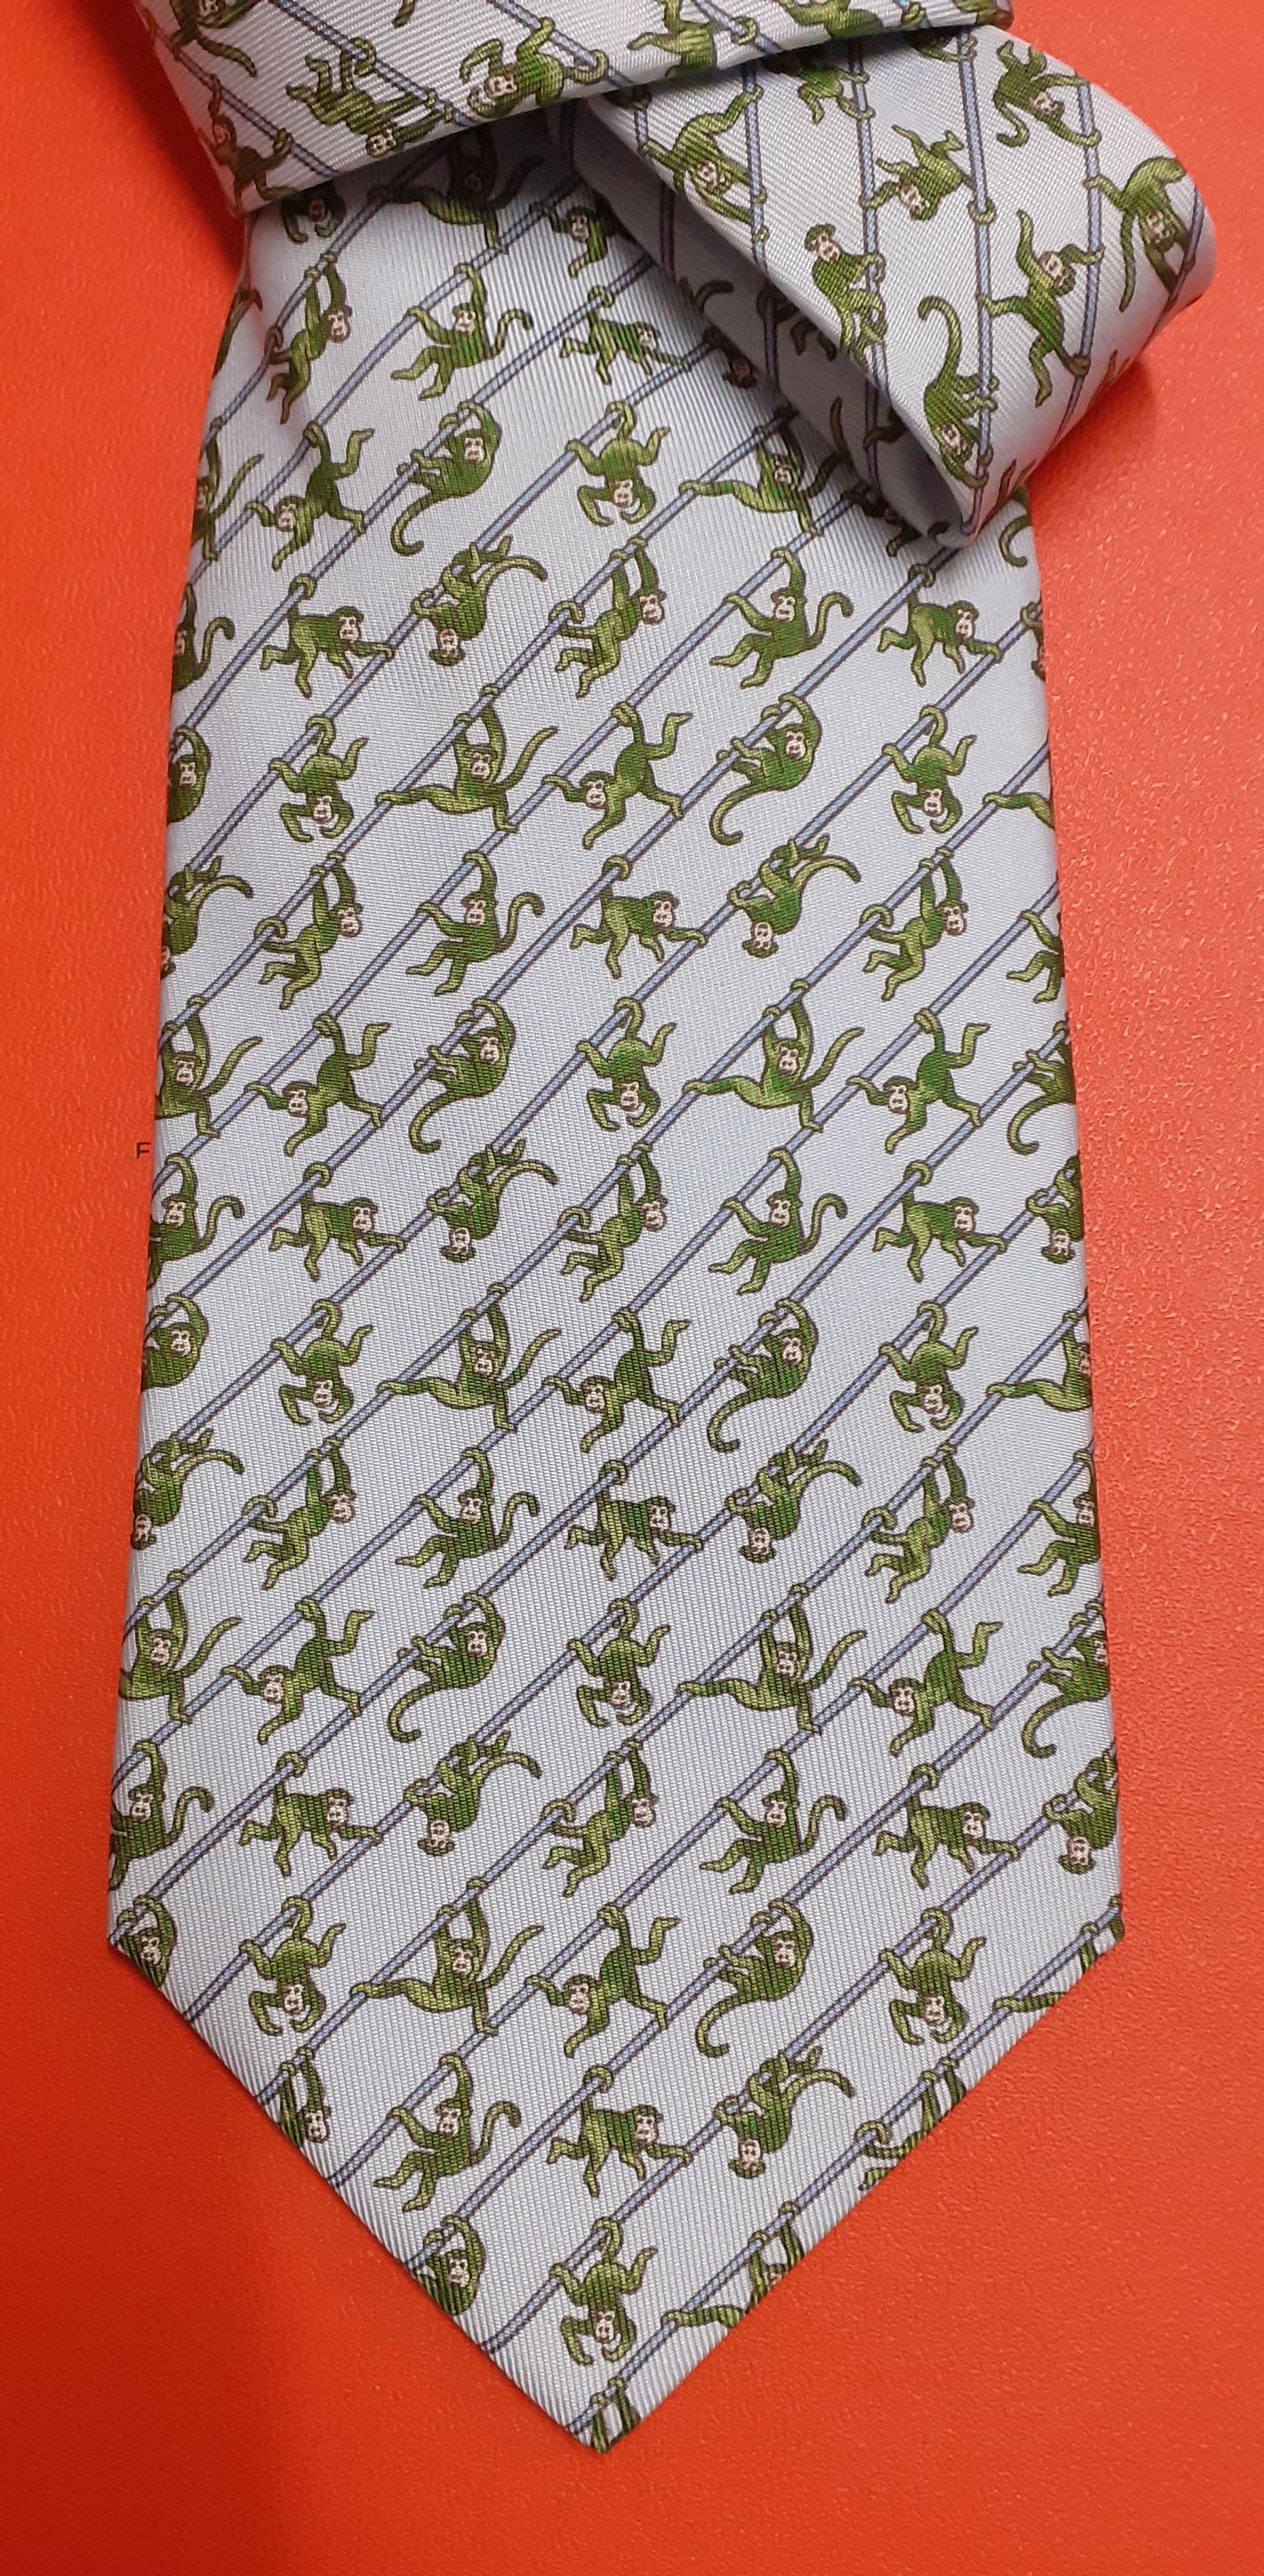 Adorable et amusante cravate authentique Hermès

De la collection 